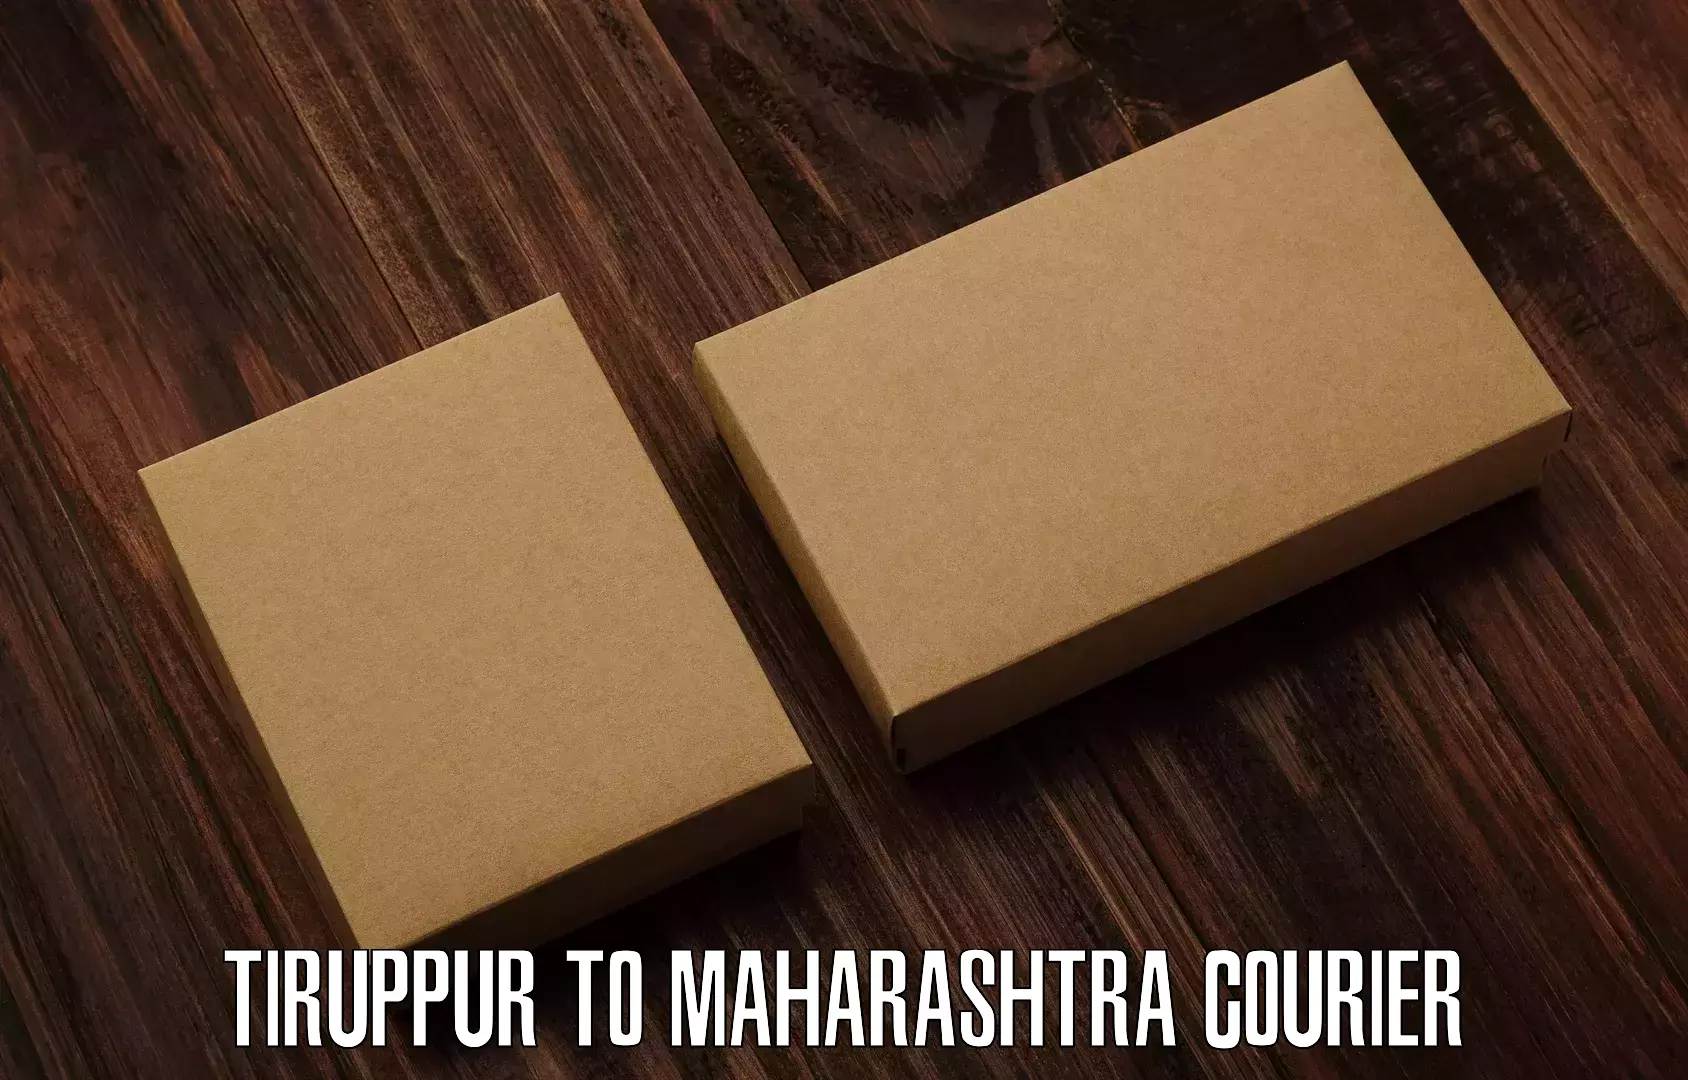 Express courier capabilities Tiruppur to Kavathe Mahankal